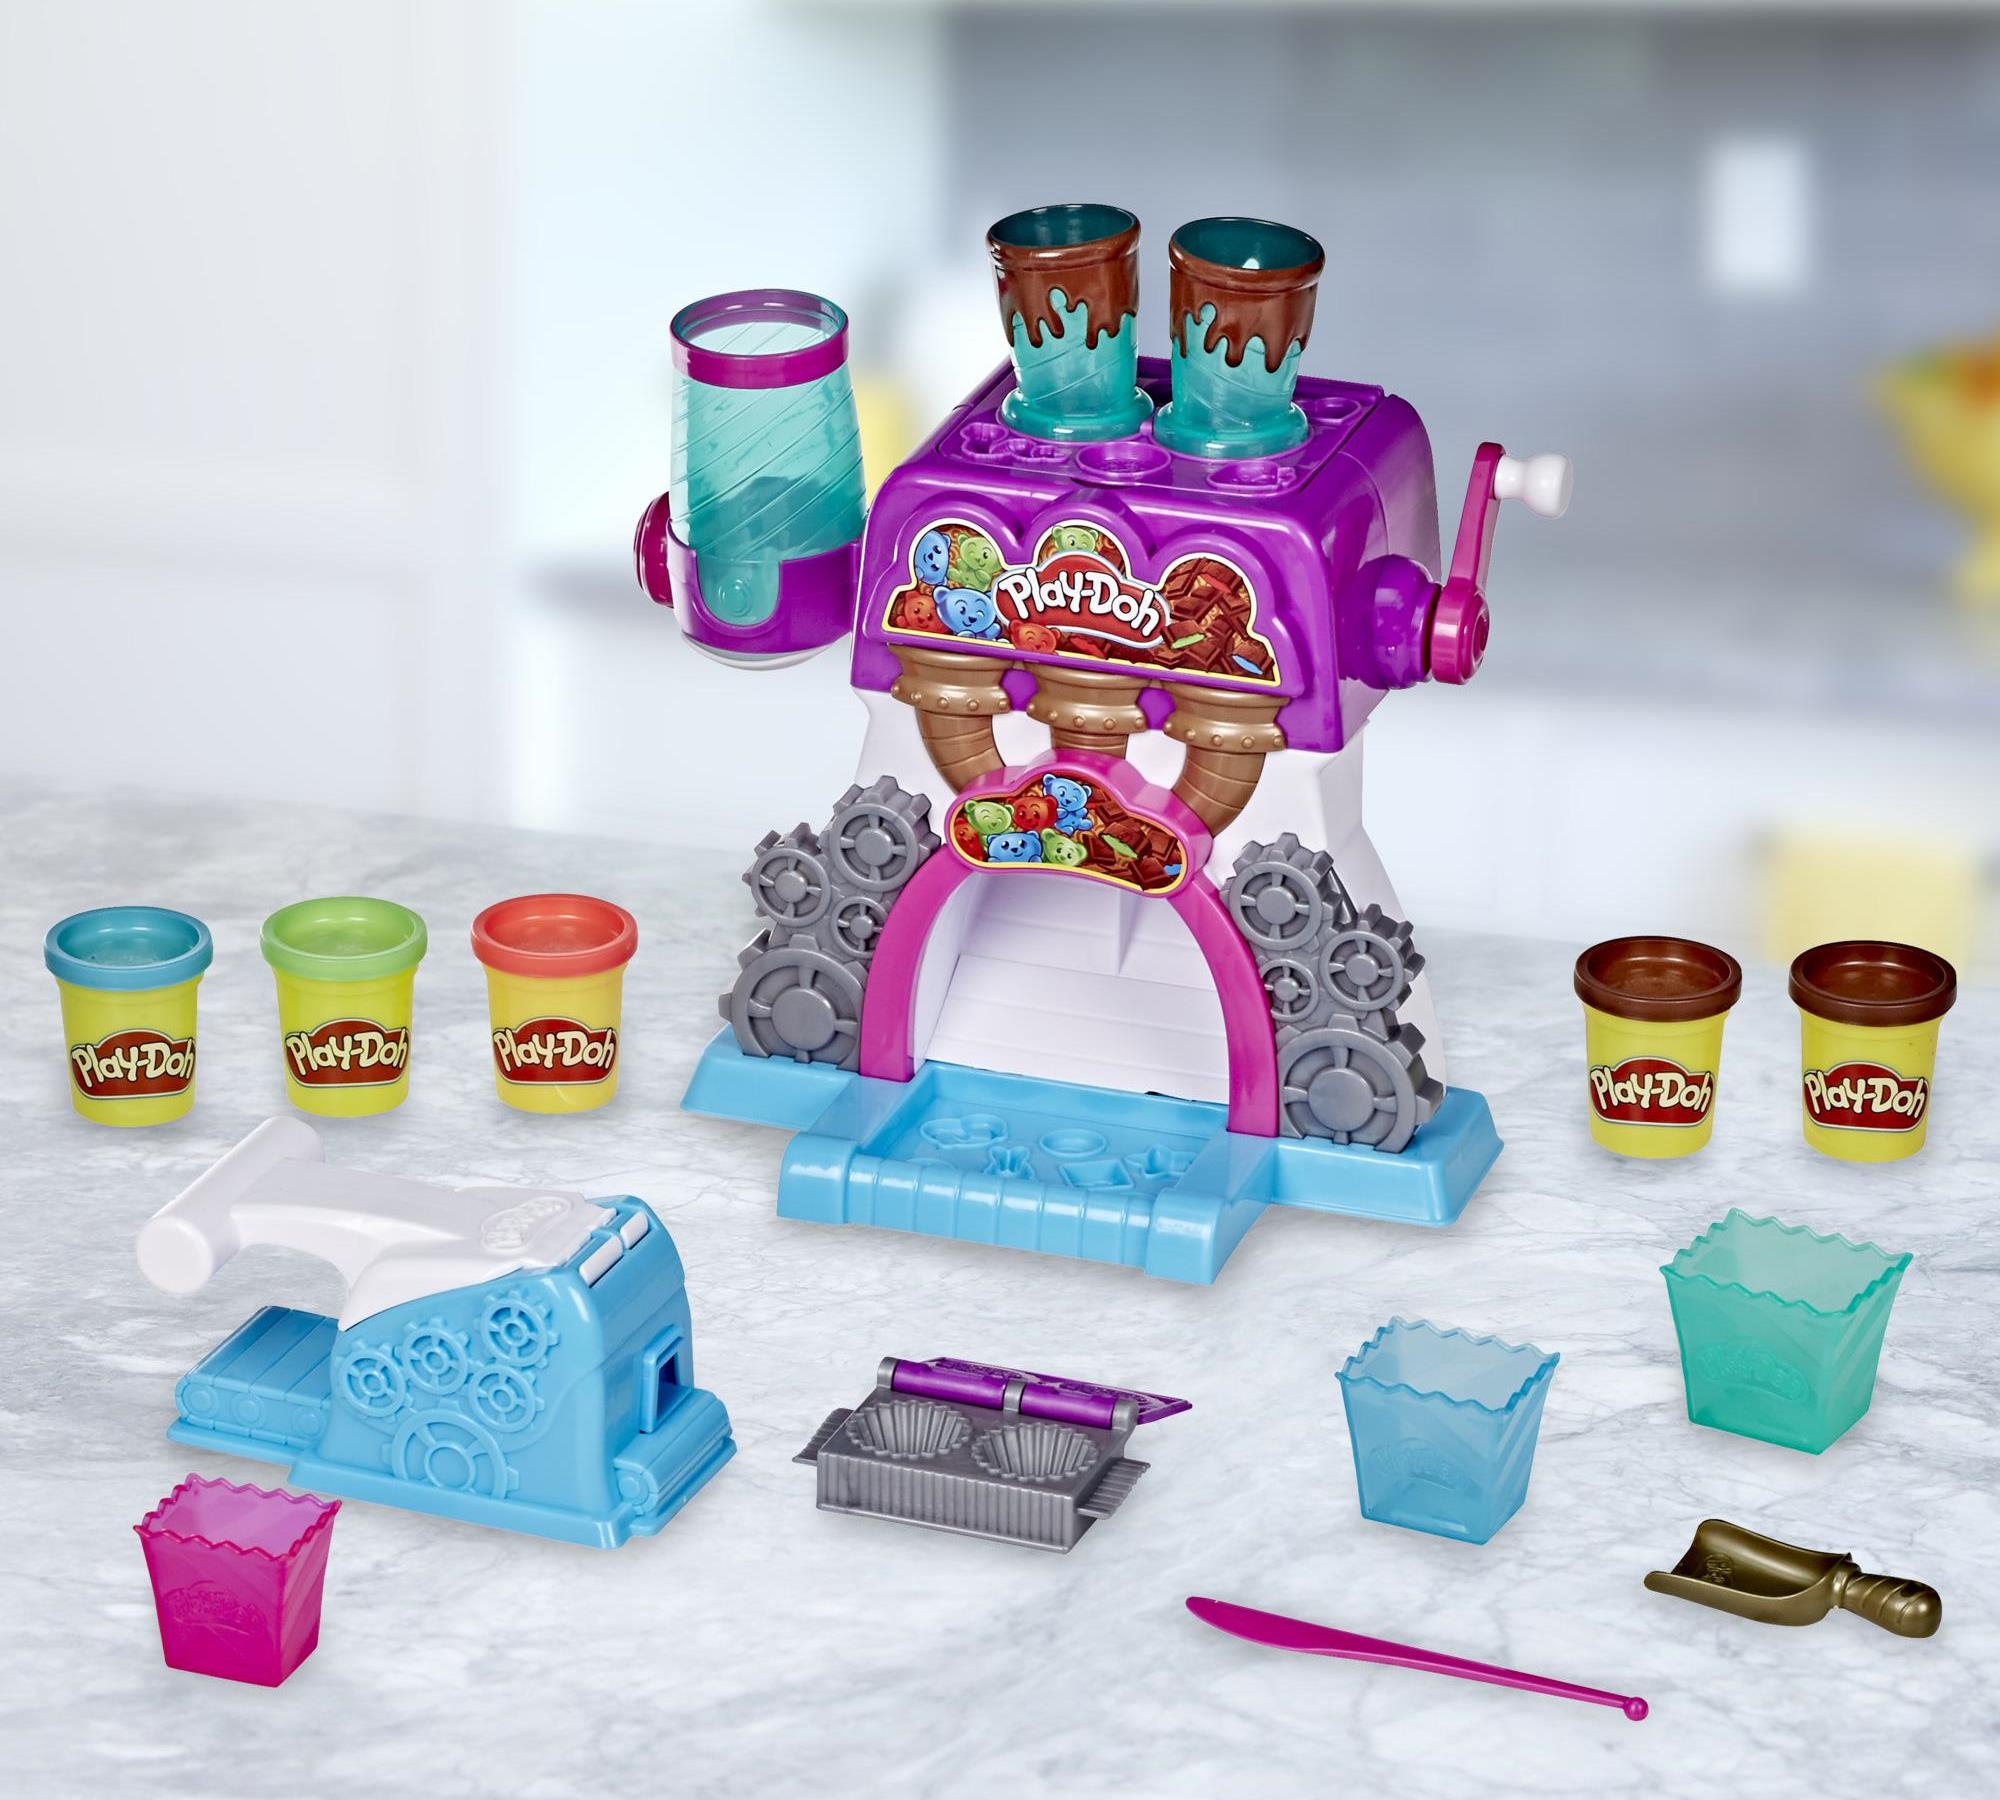 Herná sada Hasbro Play-Doh Továreň na čokoládu obsahuje cukrársky stroj, 5 kelímkov, 3 poháre, lyžicu, nôž, lis, formičku a modelínu, z ktorej deti môžu tvarovať cukrárske špeciality podľa svojej fantázie.